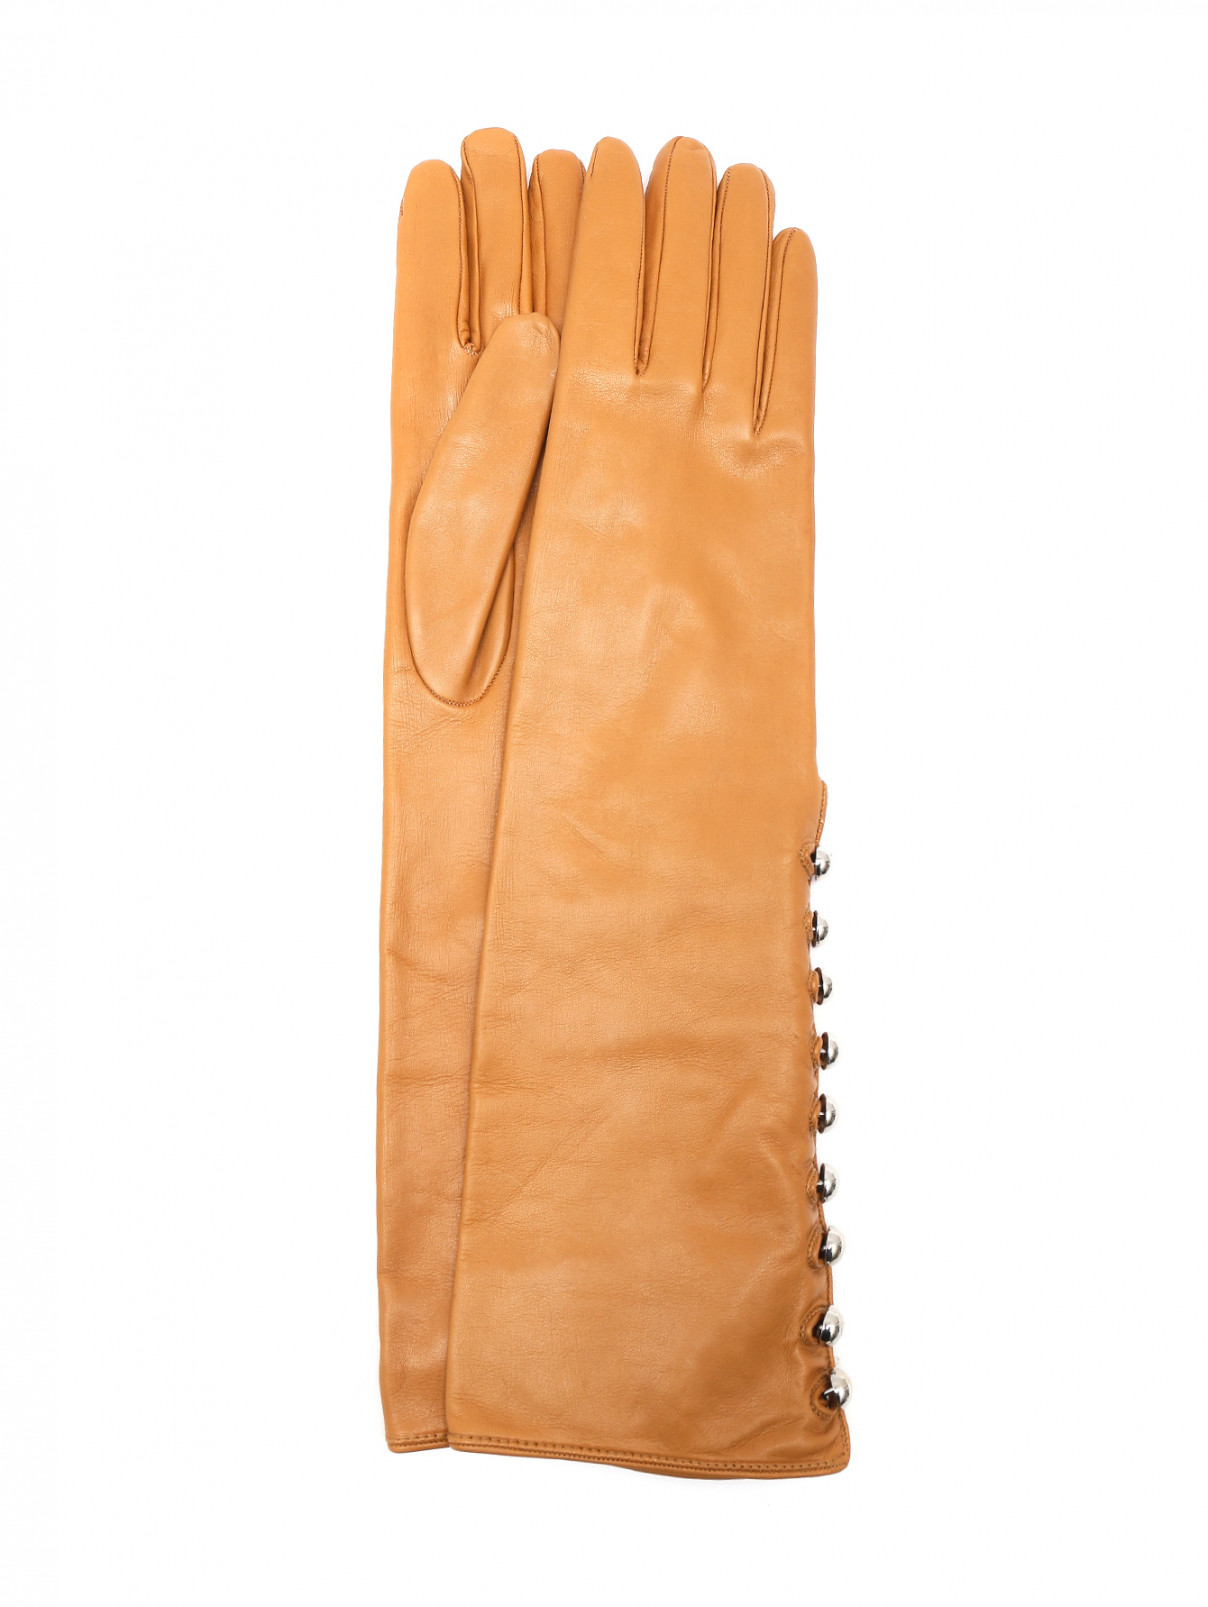 Высокие перчатки из кожи с металлическими пуговицами Ermanno Scervino  –  Общий вид  – Цвет:  Коричневый